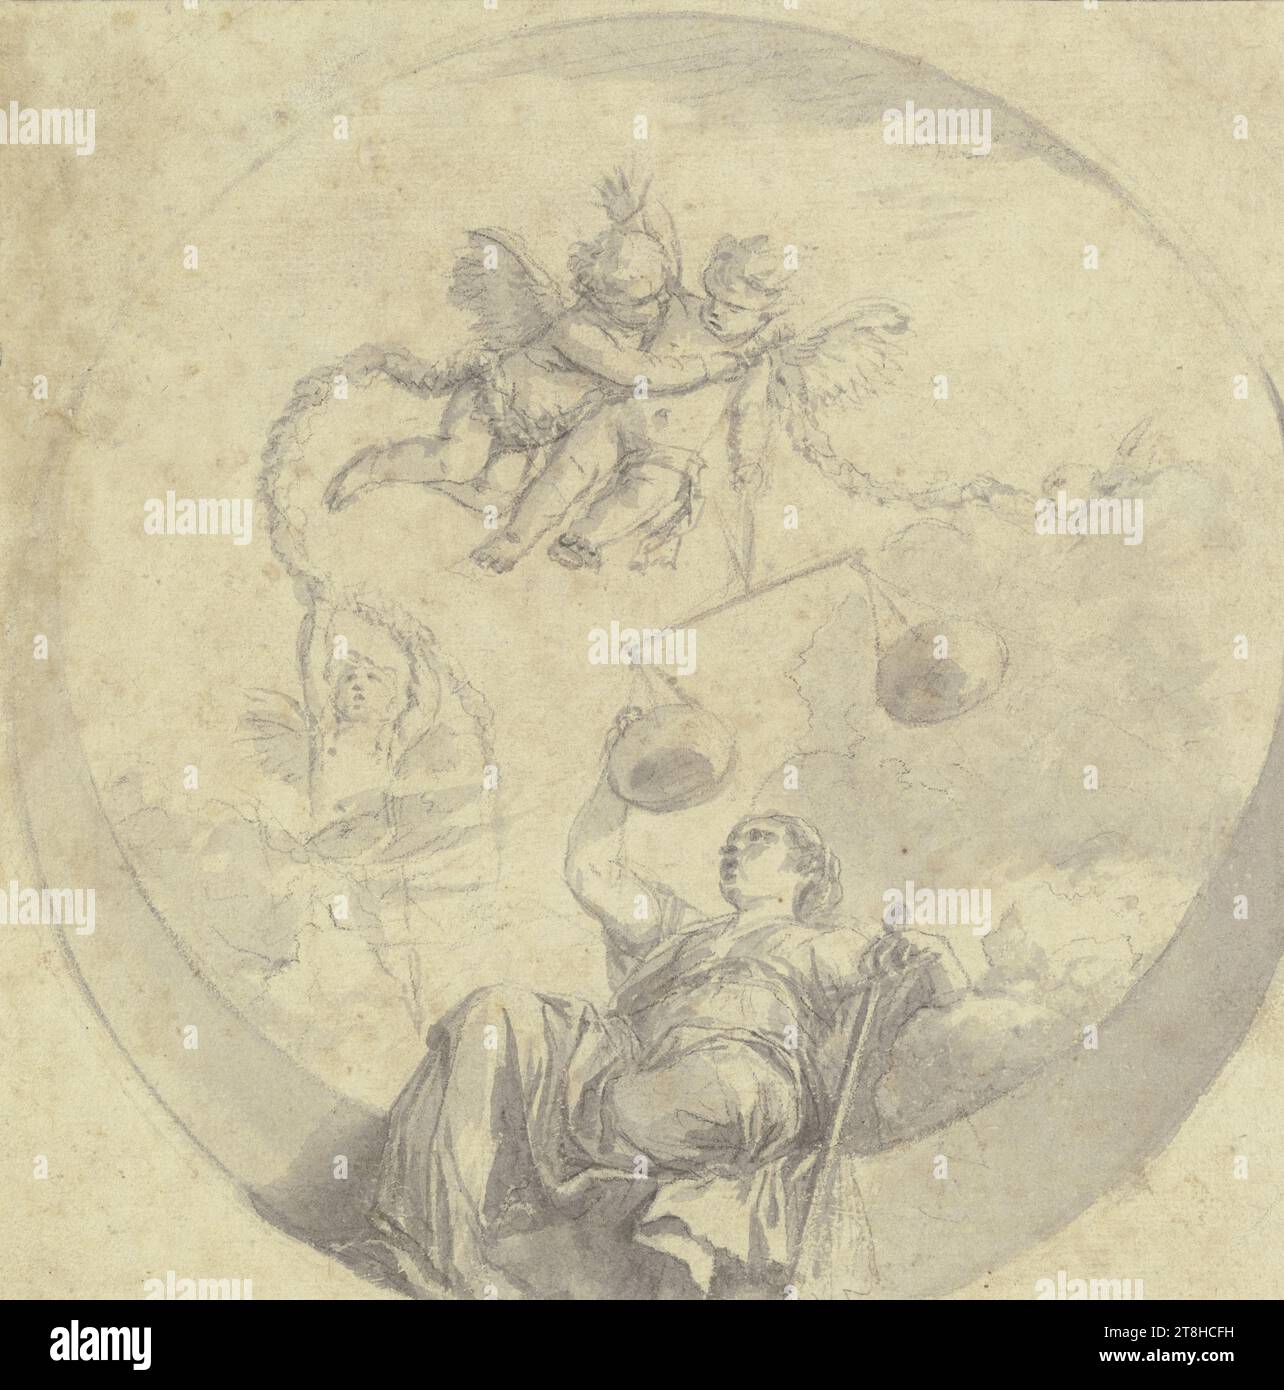 LAURENT DE LA HIRE, Justitia, ca. 1641 - 1656, feuille, 220 x 219 mm, craie noire, lavage gris, sur papier fait main, Justitia, LAURENT DE LA HIRE, 17E SIÈCLE, CLASSICISME BAROQUE FRANÇAIS, DESSIN, CRAIE NOIRE, gris lavé, sur papier fait à la main, CRAIE, ENCRE?, ENCRE?, PAPIER FABRIQUÉ, DESSIN DE CRAIE, LAVAGE, FRANÇAIS, DESSIN ILLUSTRÉ, ETUDE D'APRÈS Une PEINTURE DE PLAFOND, CONCEPTION POUR Une PEINTURE DE PLAFOND, timbre verso du marchand d'art Guillaume-Jean Constantin, Paris, Francfort sur le main Banque D'Images